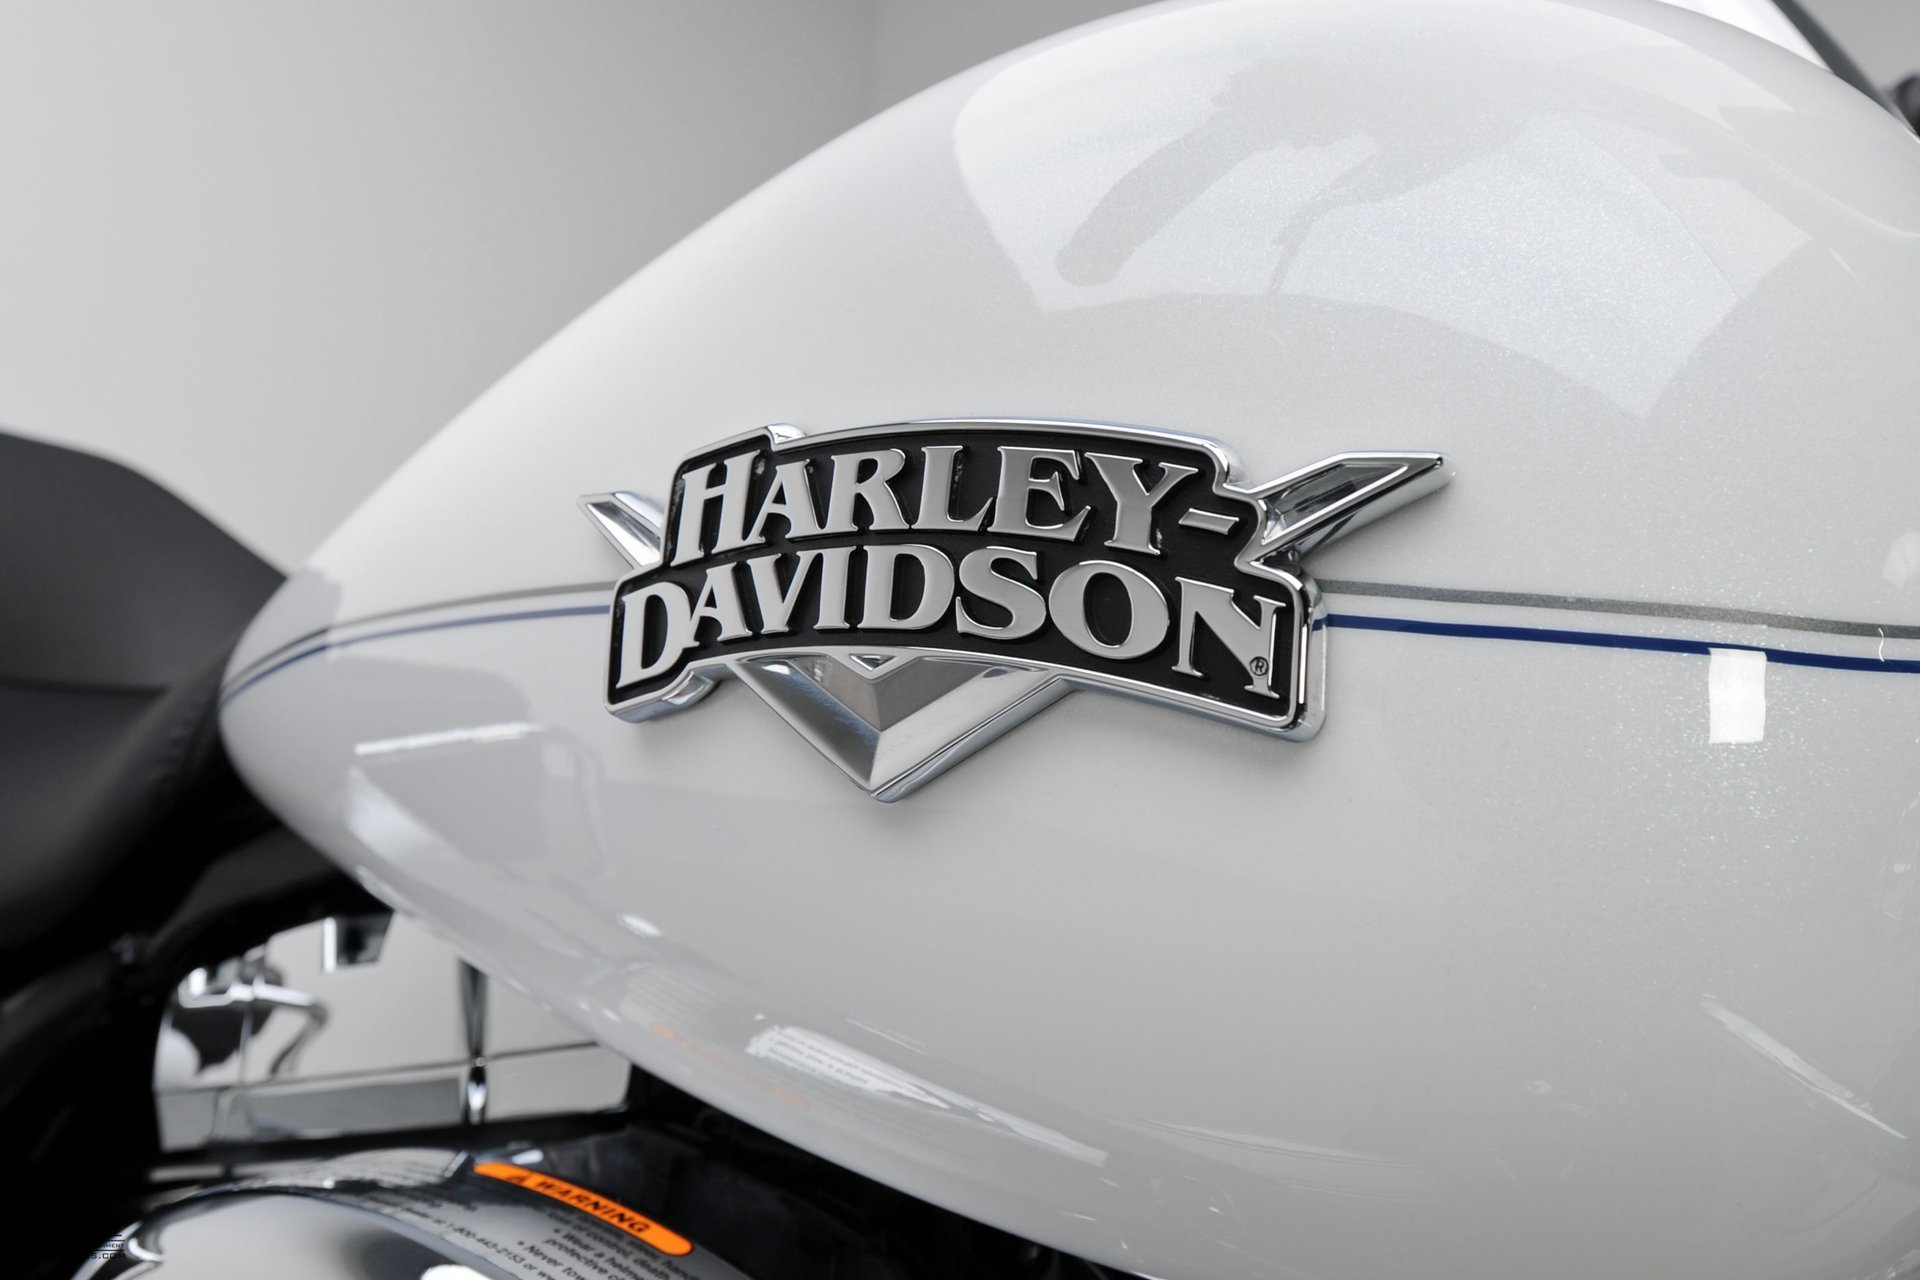 For Sale 2012 Harley Davidson Road King